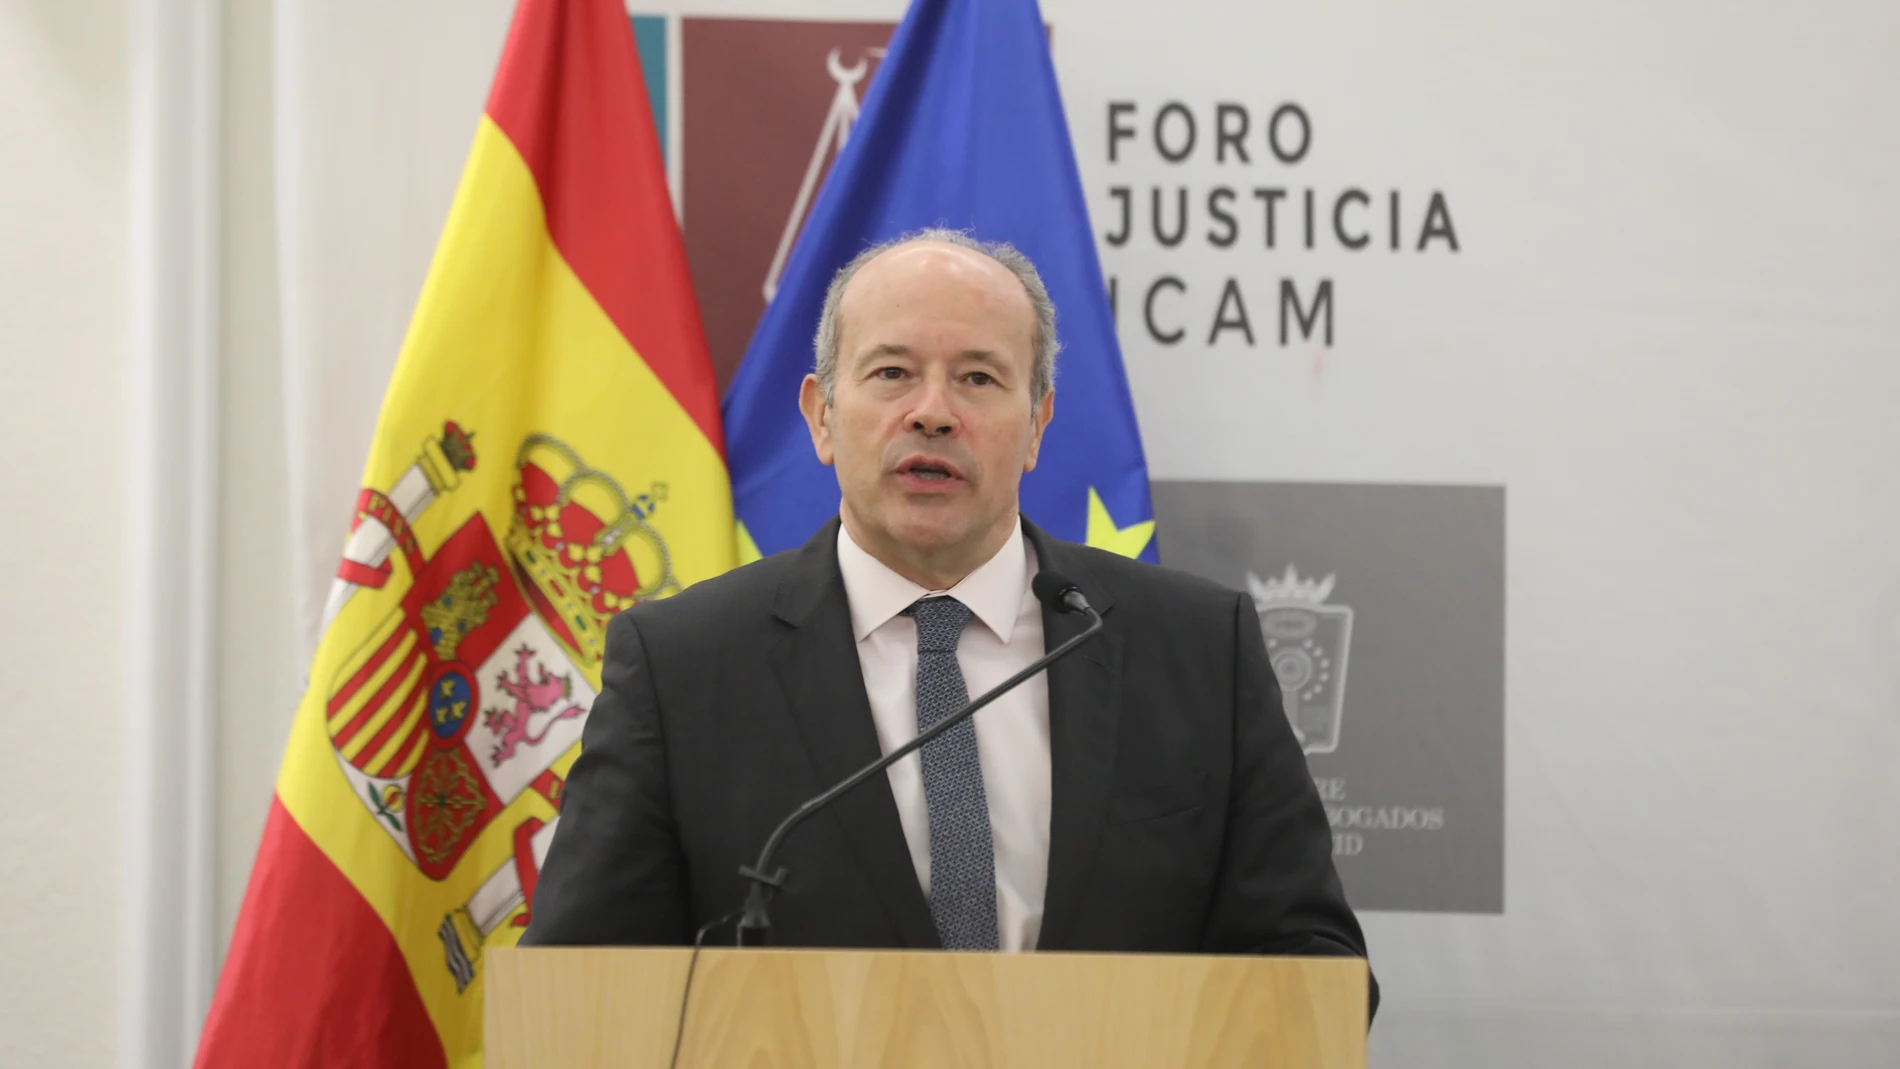 El ministro de Justicia, Juan Carlos Campo, presenta a la presidenta del Consejo General de la Abogacía, Victoria Ortega